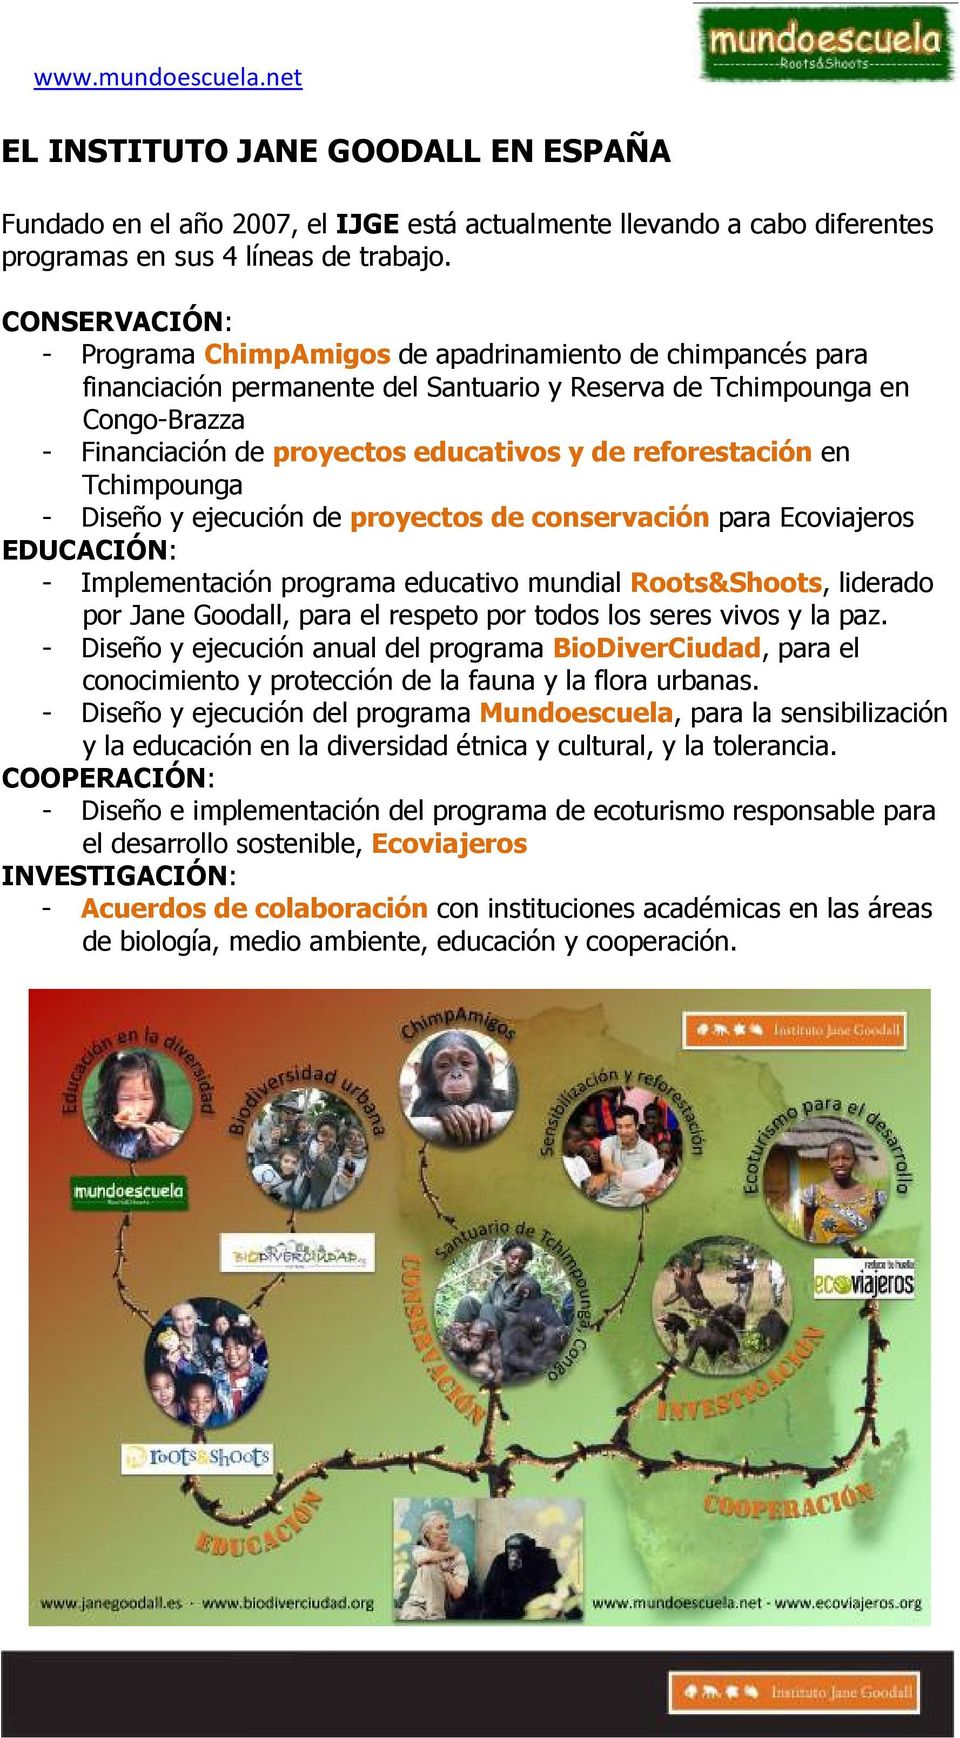 reforestación en Tchimpounga - Diseño y ejecución de proyectos de conservación para Ecoviajeros EDUCACIÓN: - Implementación programa educativo mundial Roots&Shoots, liderado por Jane Goodall, para el